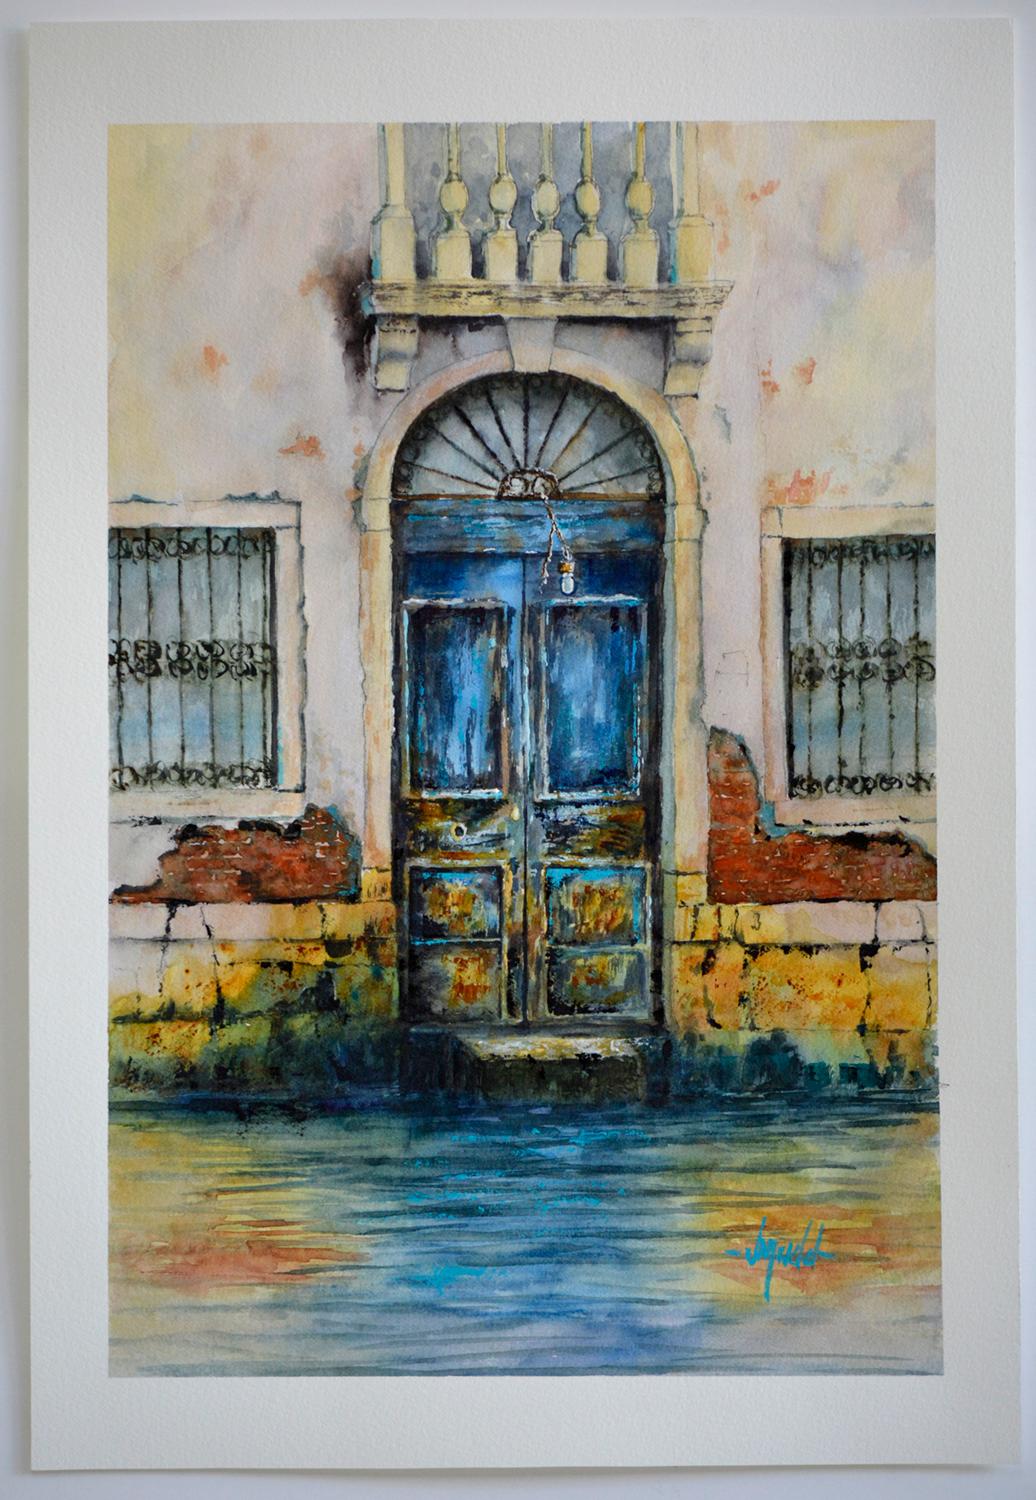 <p>Kommentare des Künstlers<br>Die Künstlerin Judy Mudd zeigt ein gewölbtes Tor in Venedig in einer detaillierten impressionistischen Darstellung. Ein Teil ihrer Urban-Kollektion ist eine Hommage an verschiedene kulturelle Architekturen. Sie lässt